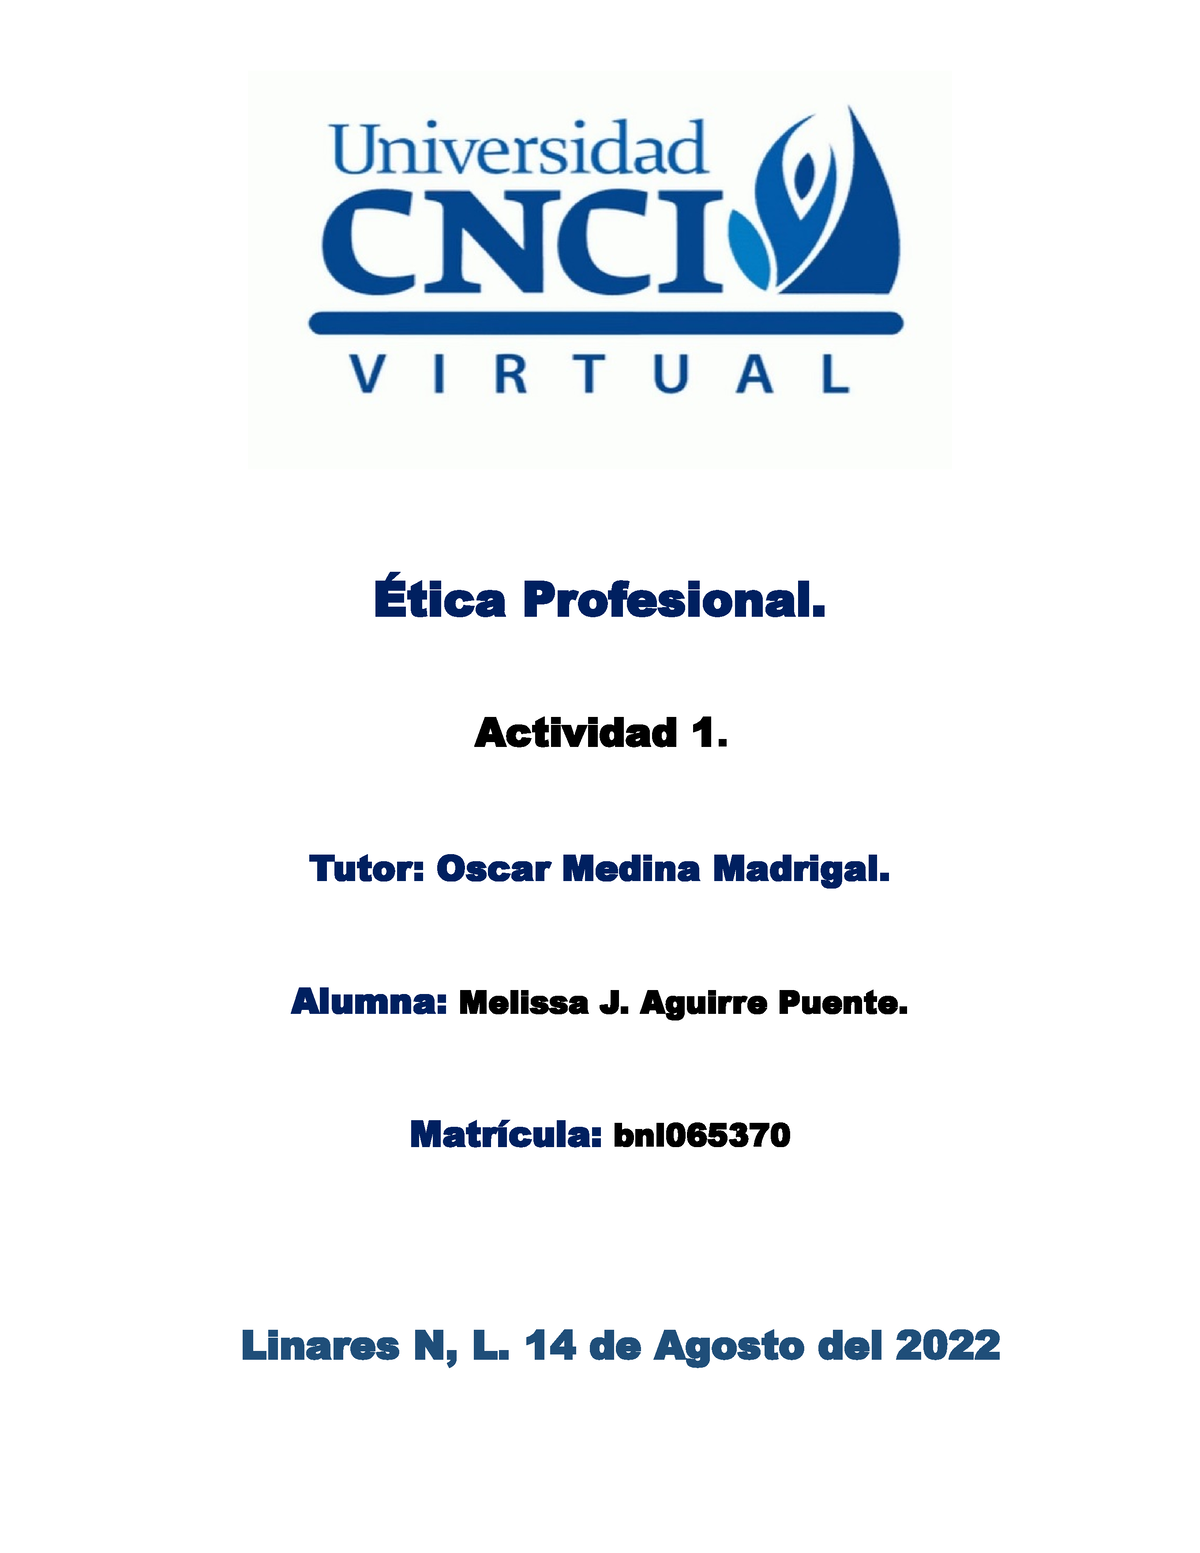 Ética Profesional Act 1 Ética Profesional Actividad 1 Tutor Oscar Medina Madrigal Alumna 2522